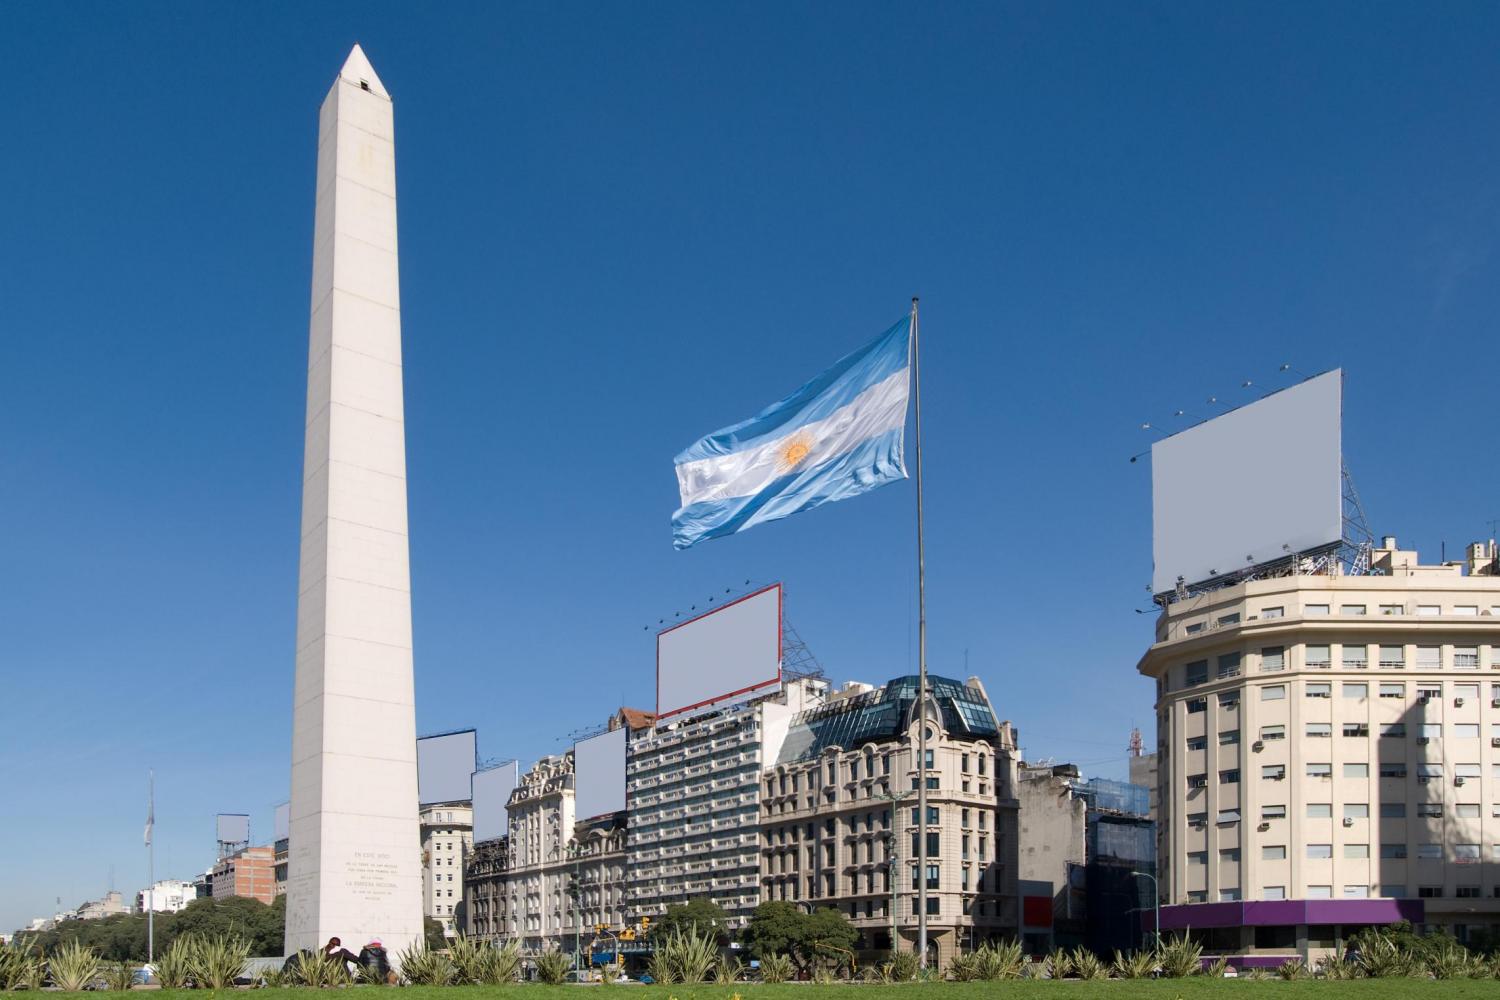 acessibilidade em Buenos Aires